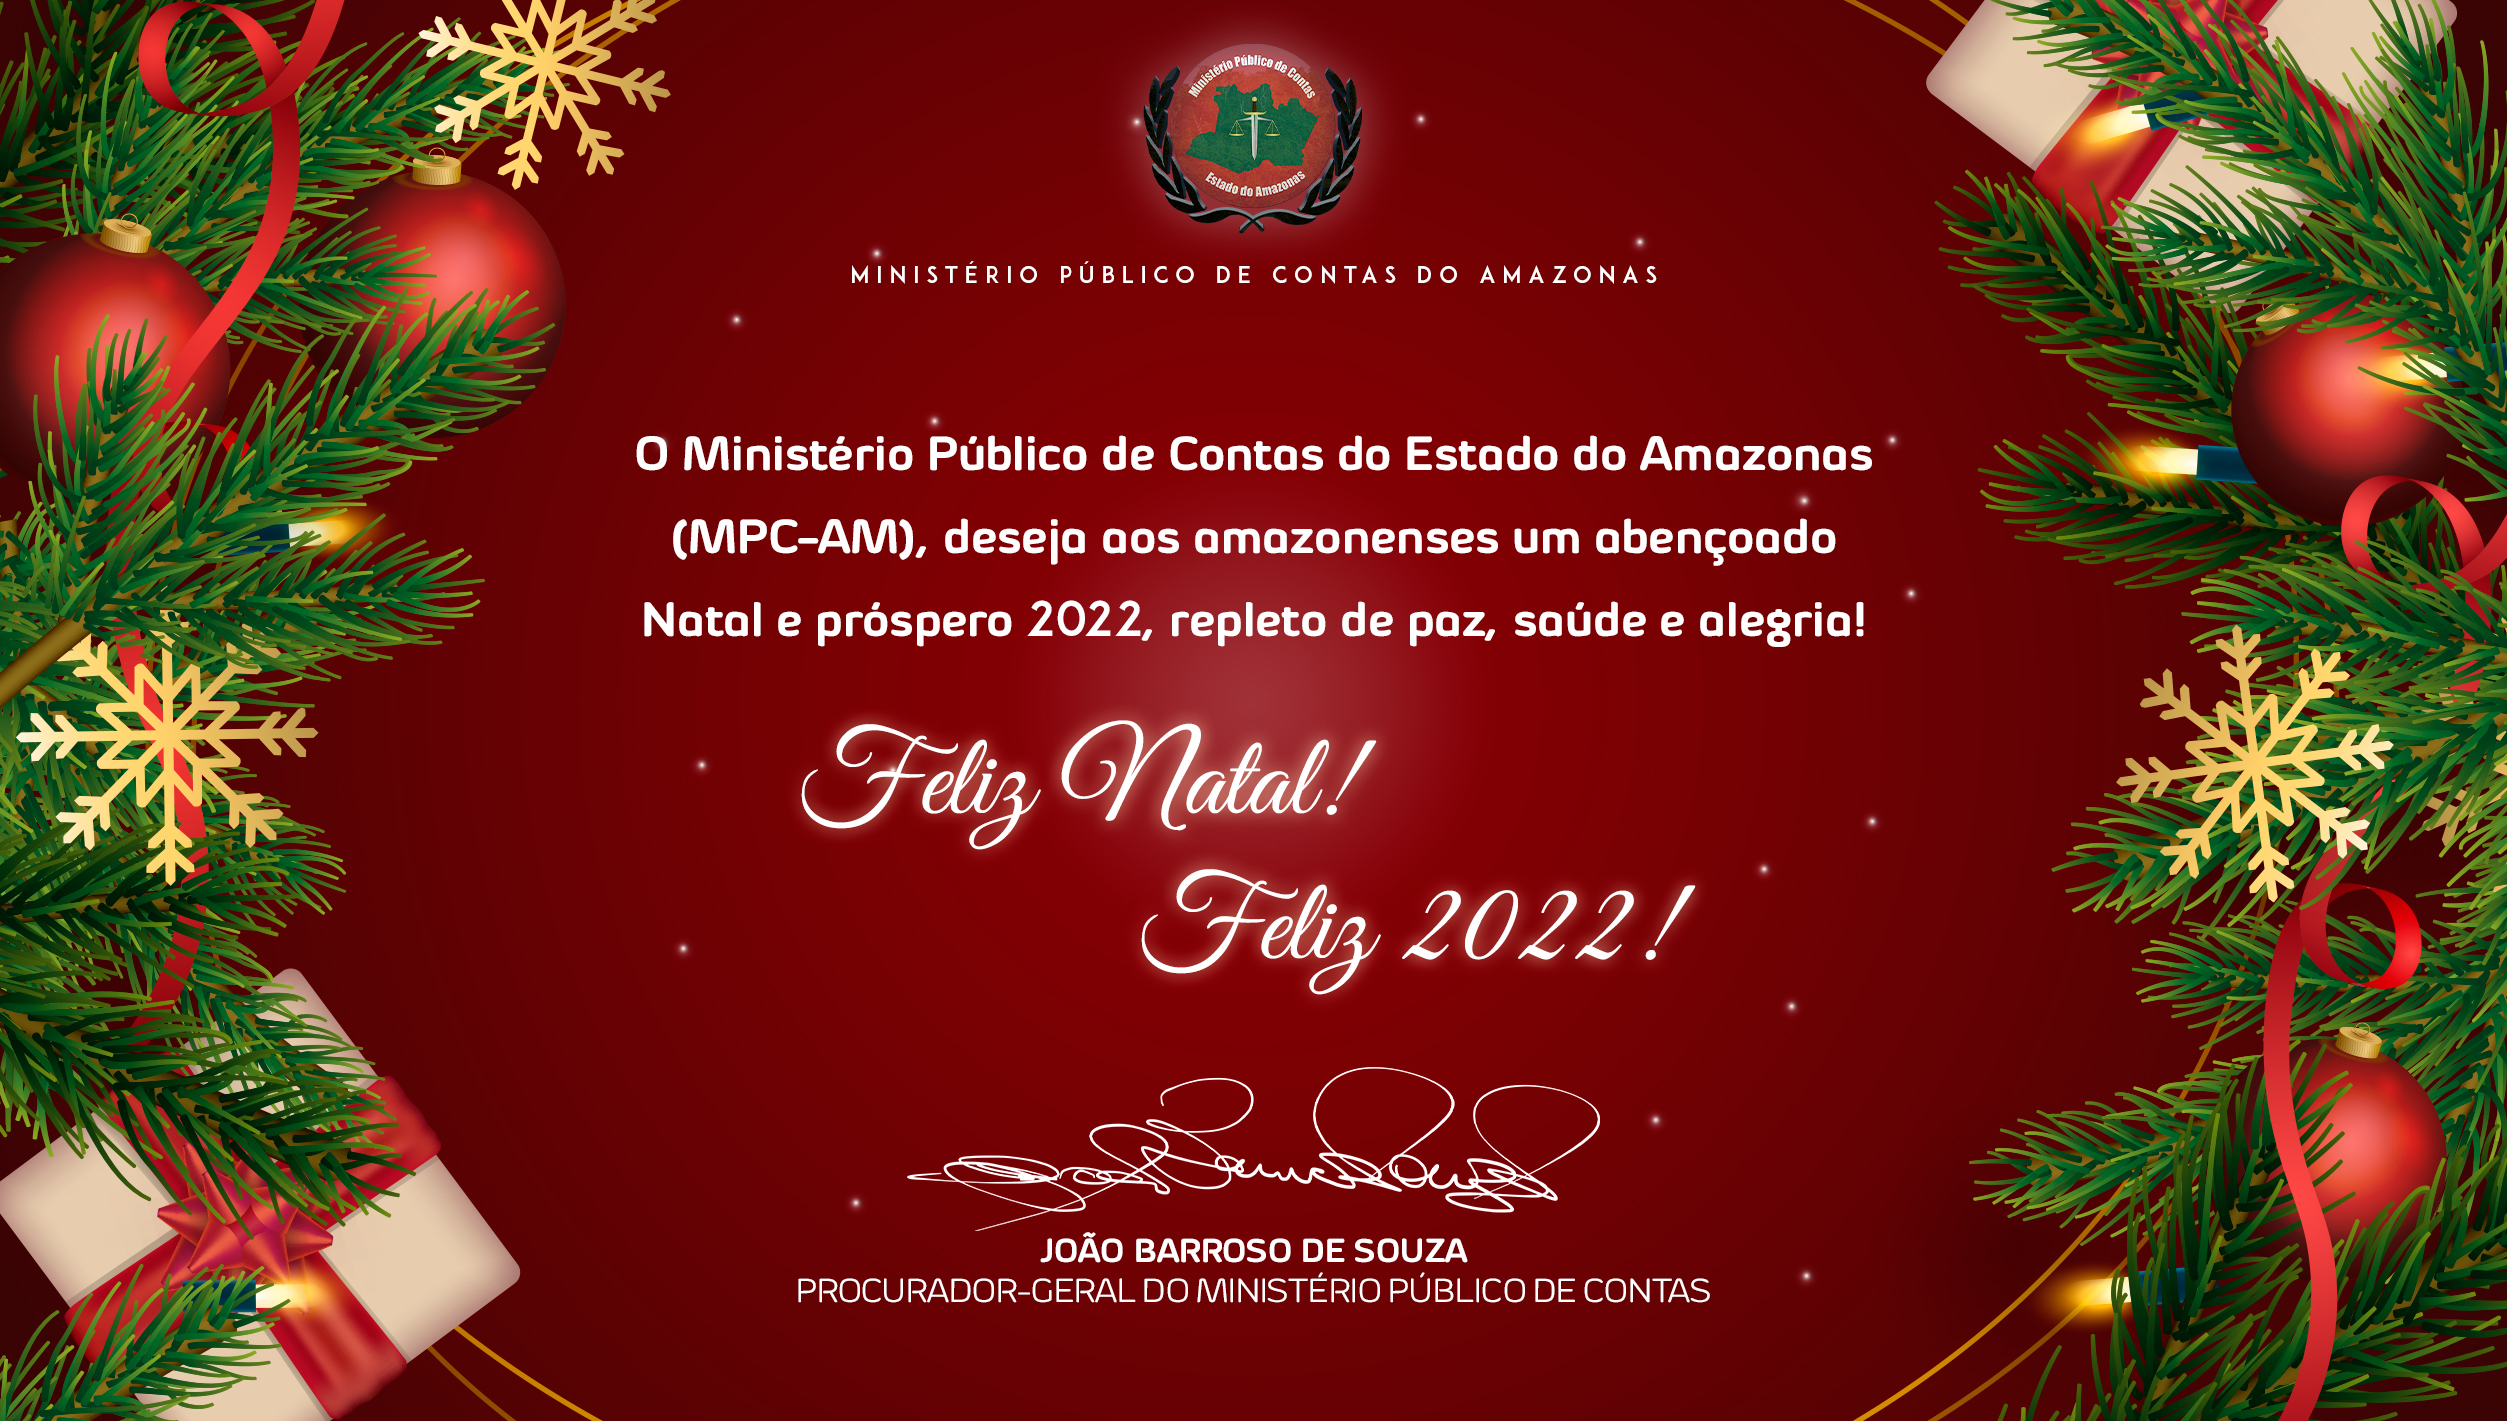 Feliz Natal! Feliz 2022! – Ministério Público de Contas do Amazonas